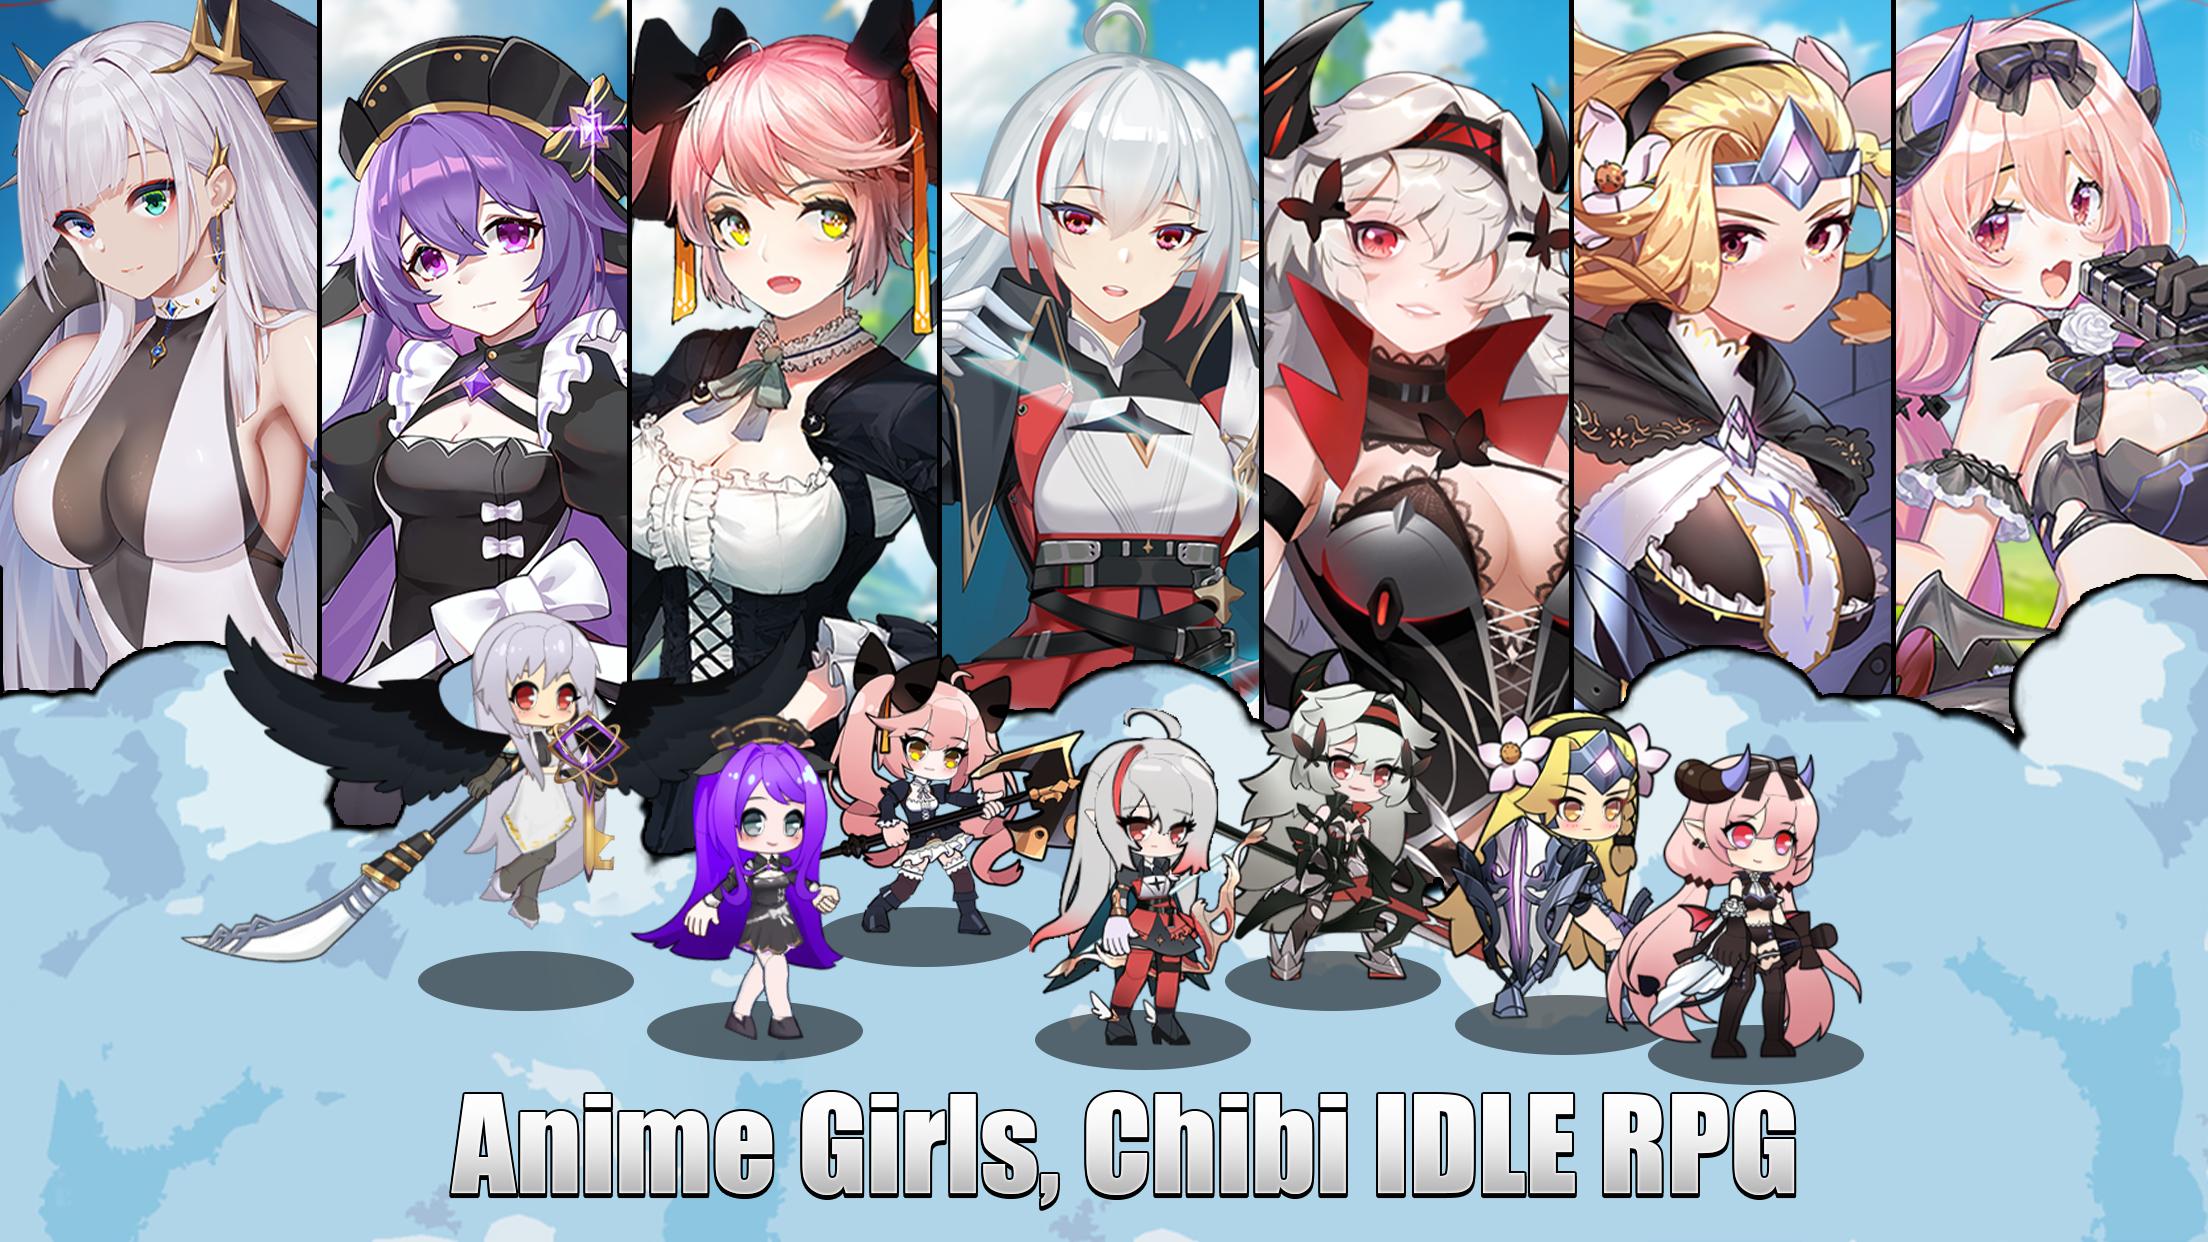 Ark Battle Girls 0.0.13 APK + Mod (Mod Menu / High Damage) for Android